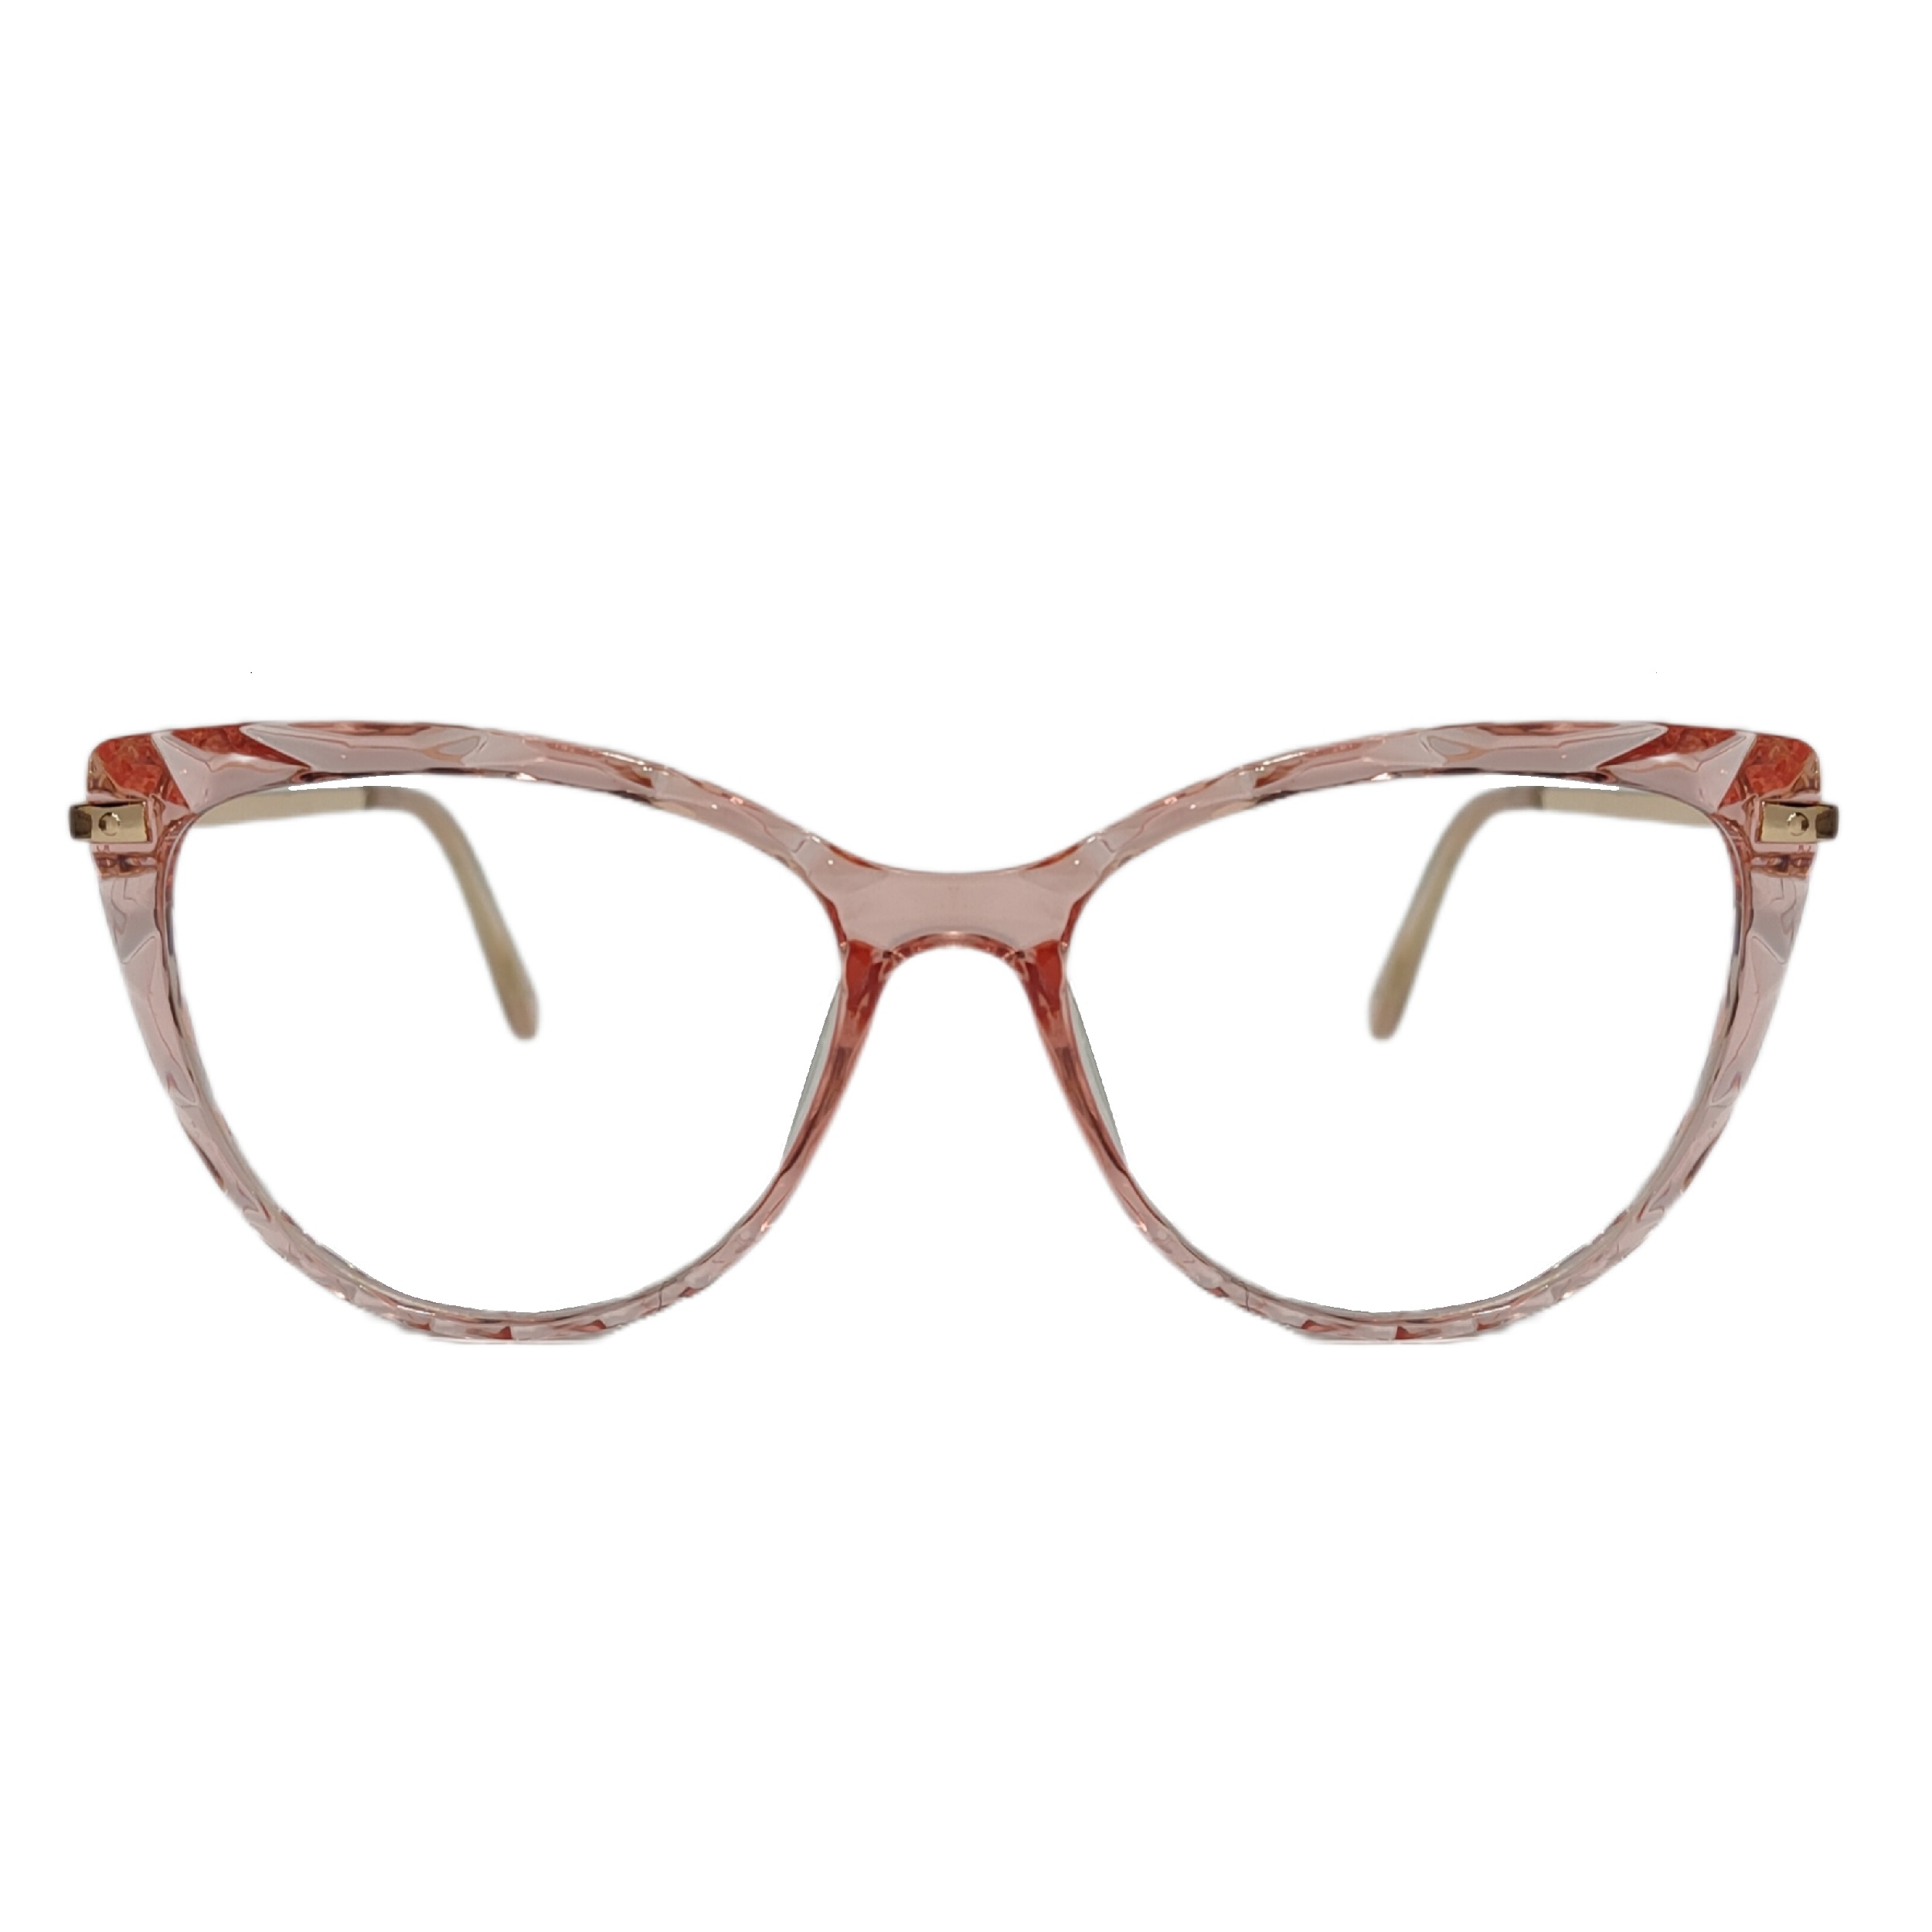 فریم عینک طبی زنانه مدل فریم کریستالی دسته فلزی گربه ای کد 0250